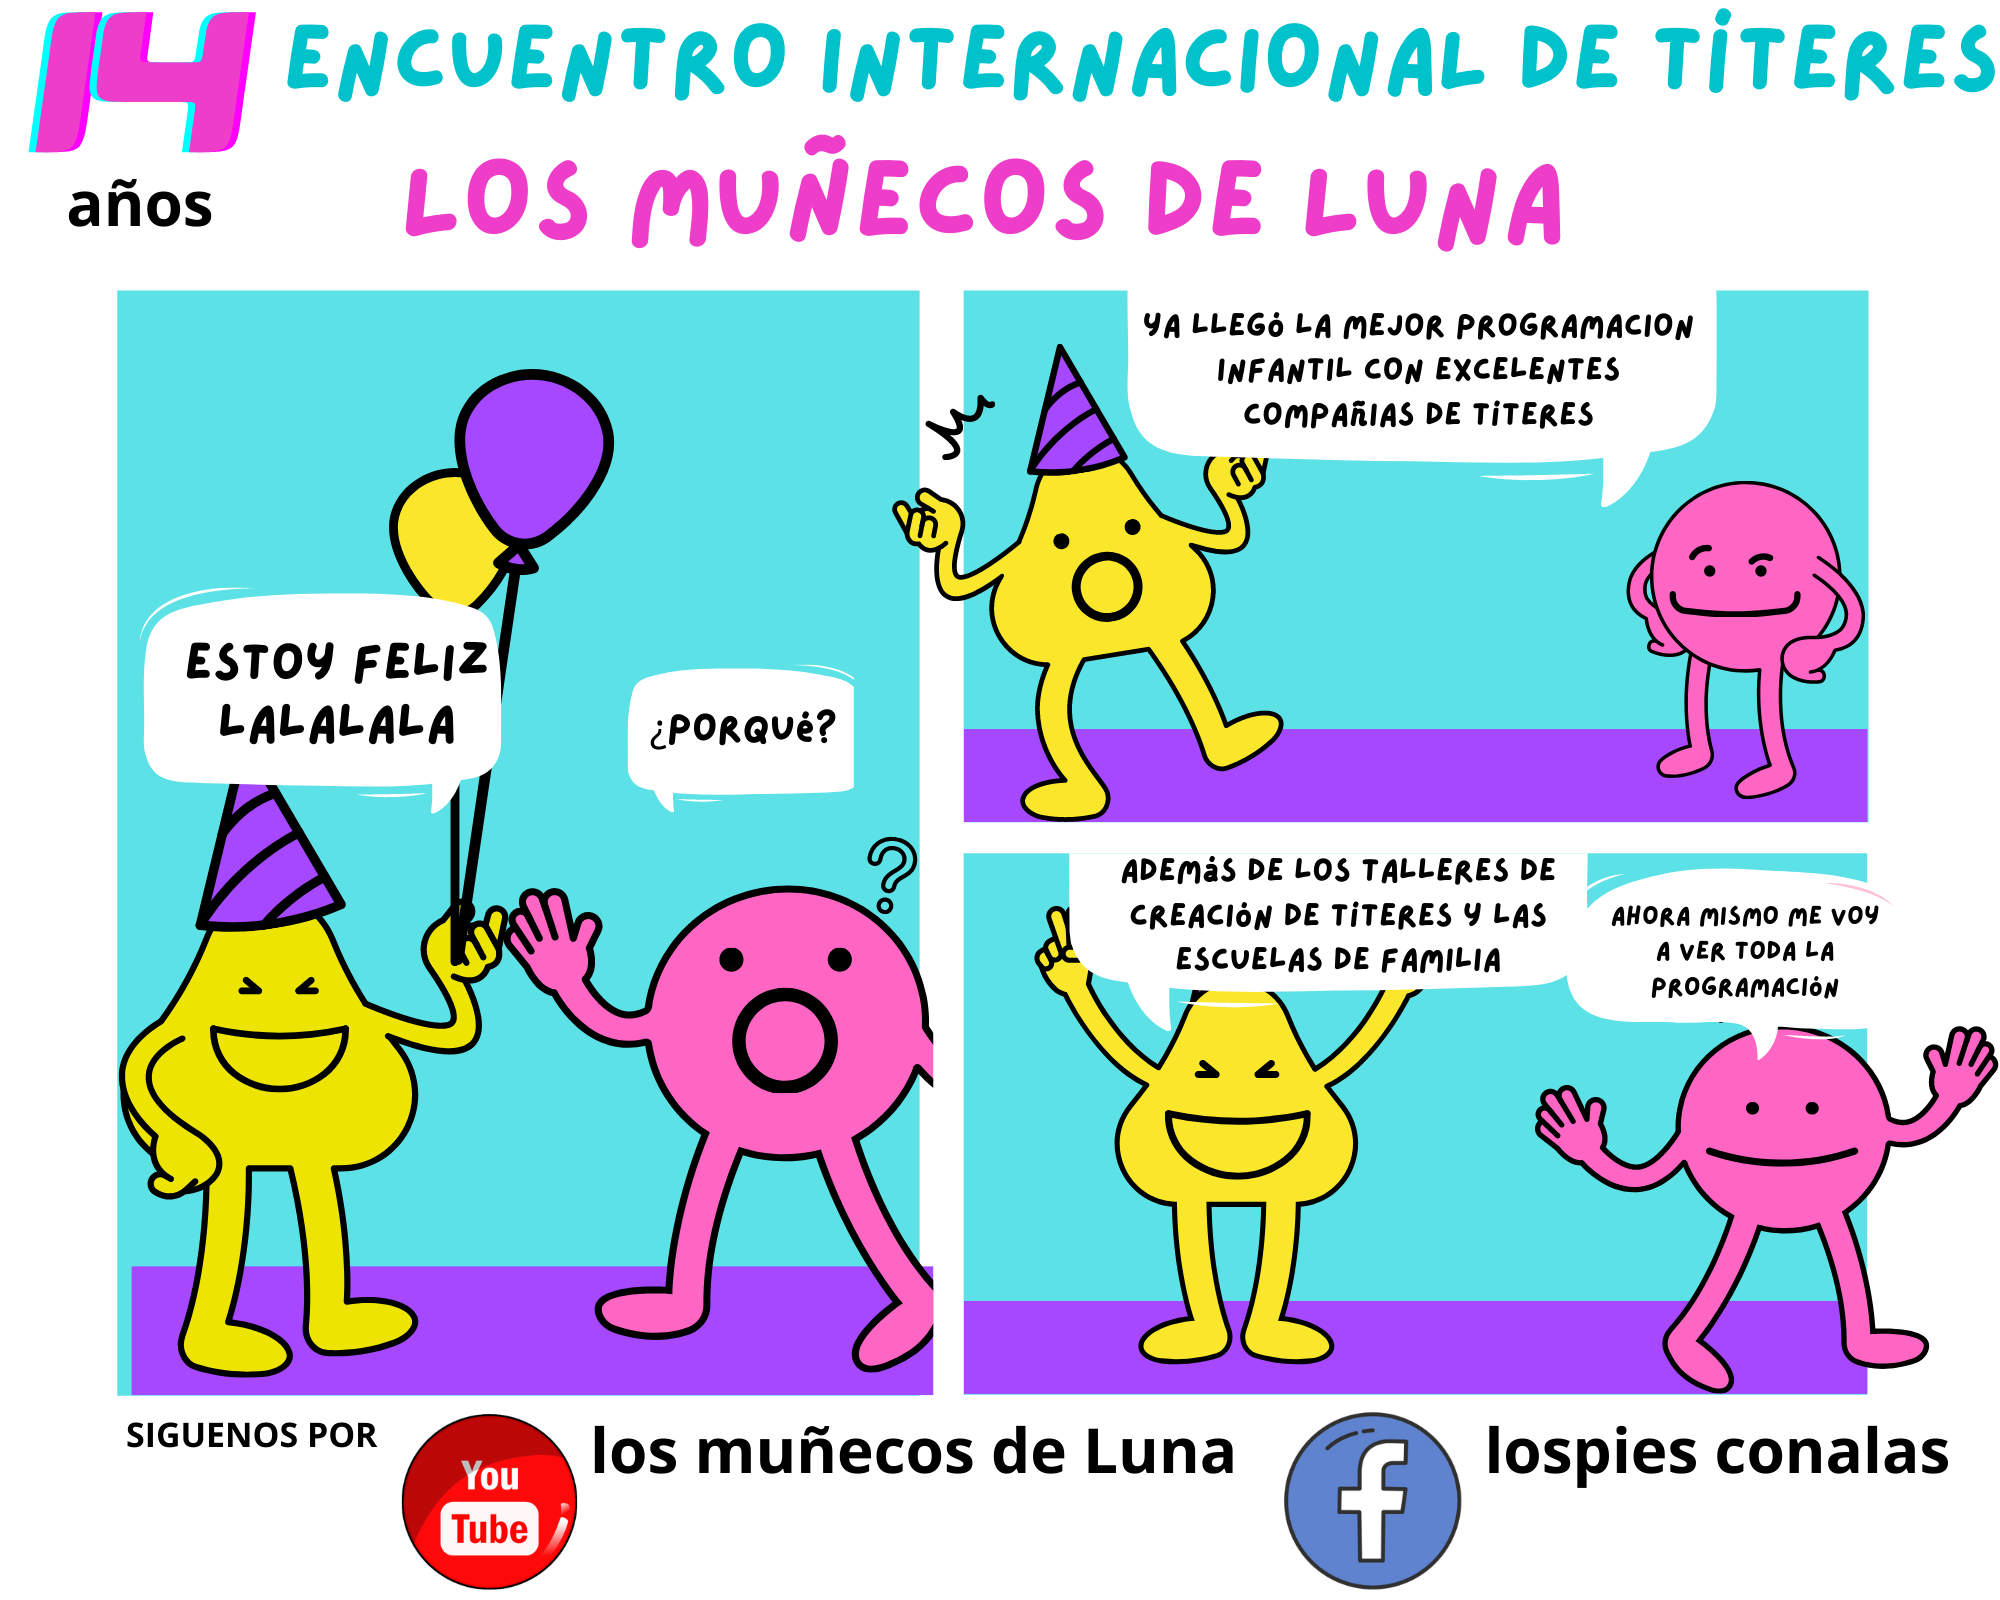 17 Encuentro Iberoamericano de Teatro y Títeres los muñecos de luna          es los Muñecos de     loso y Títeres s Mu    